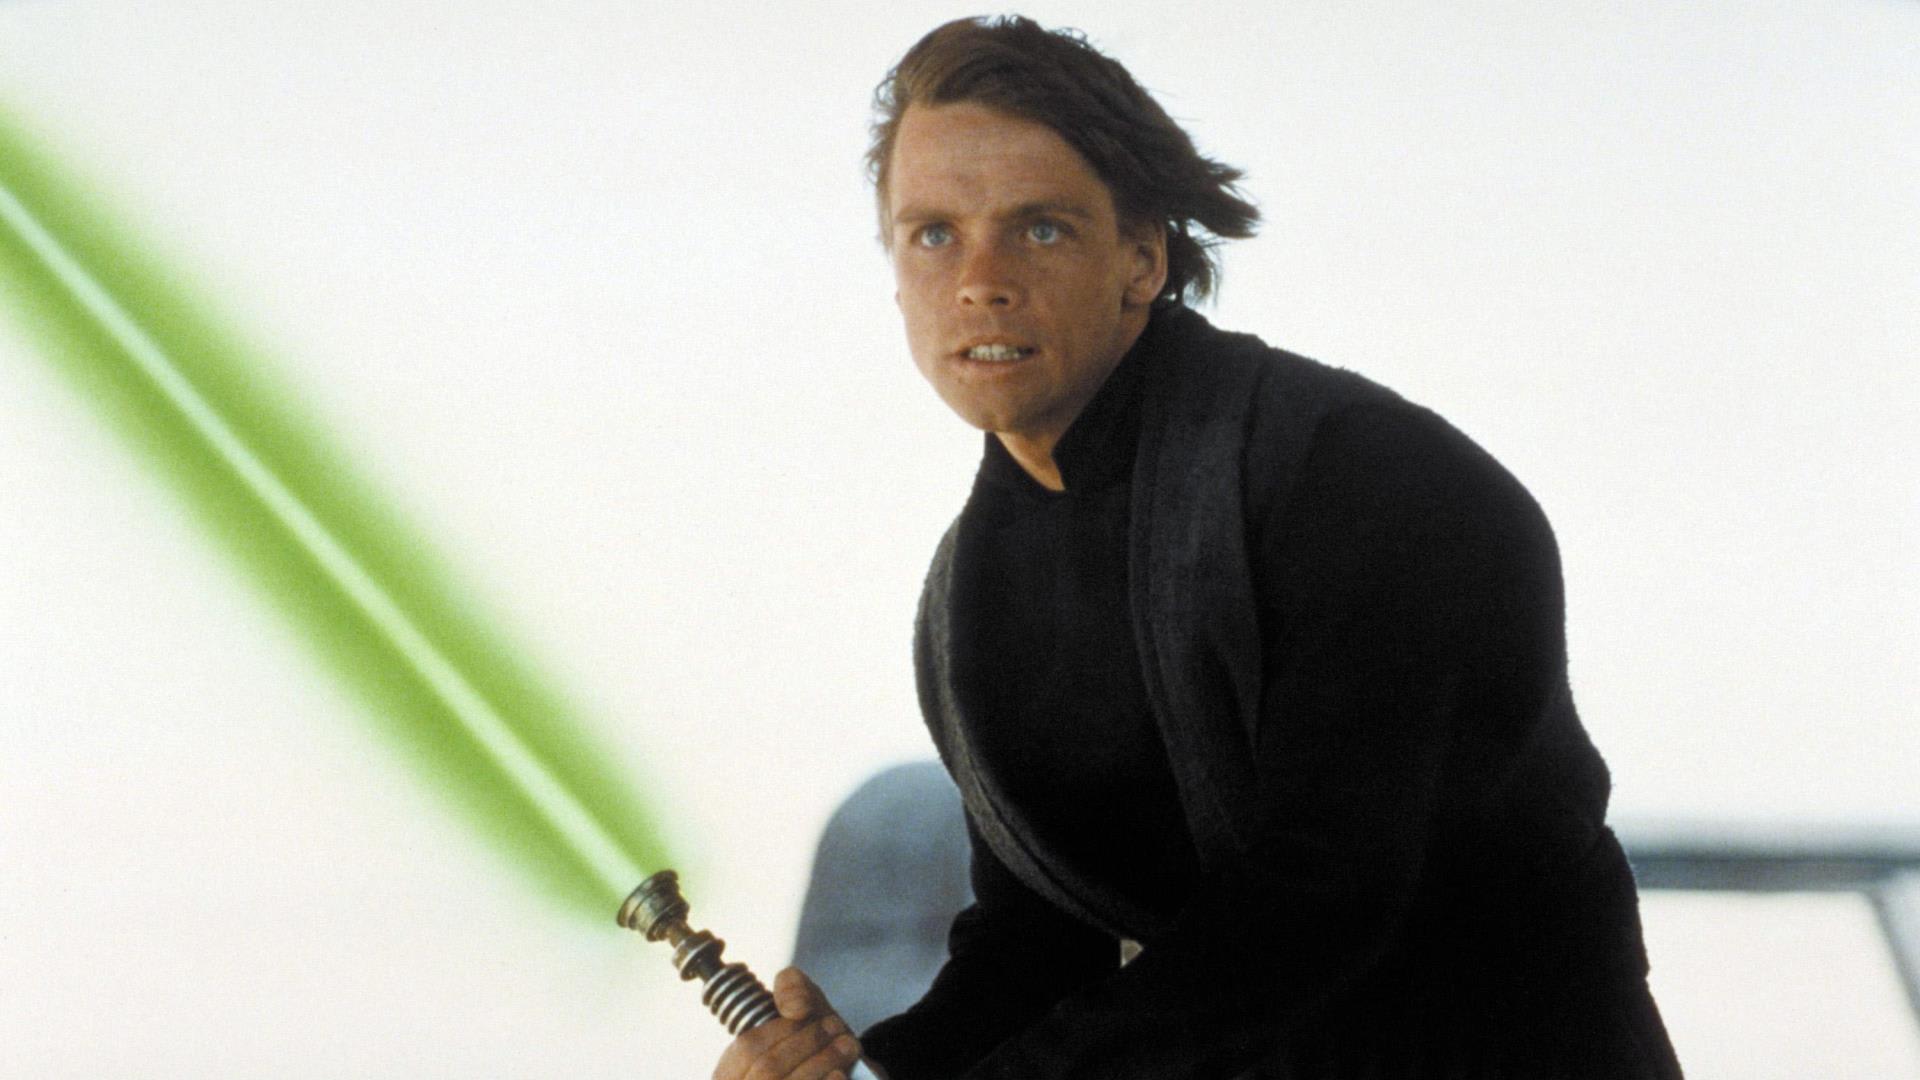 Budou někdy fanoušci Star Wars vlastnit skutečný světelný meč?